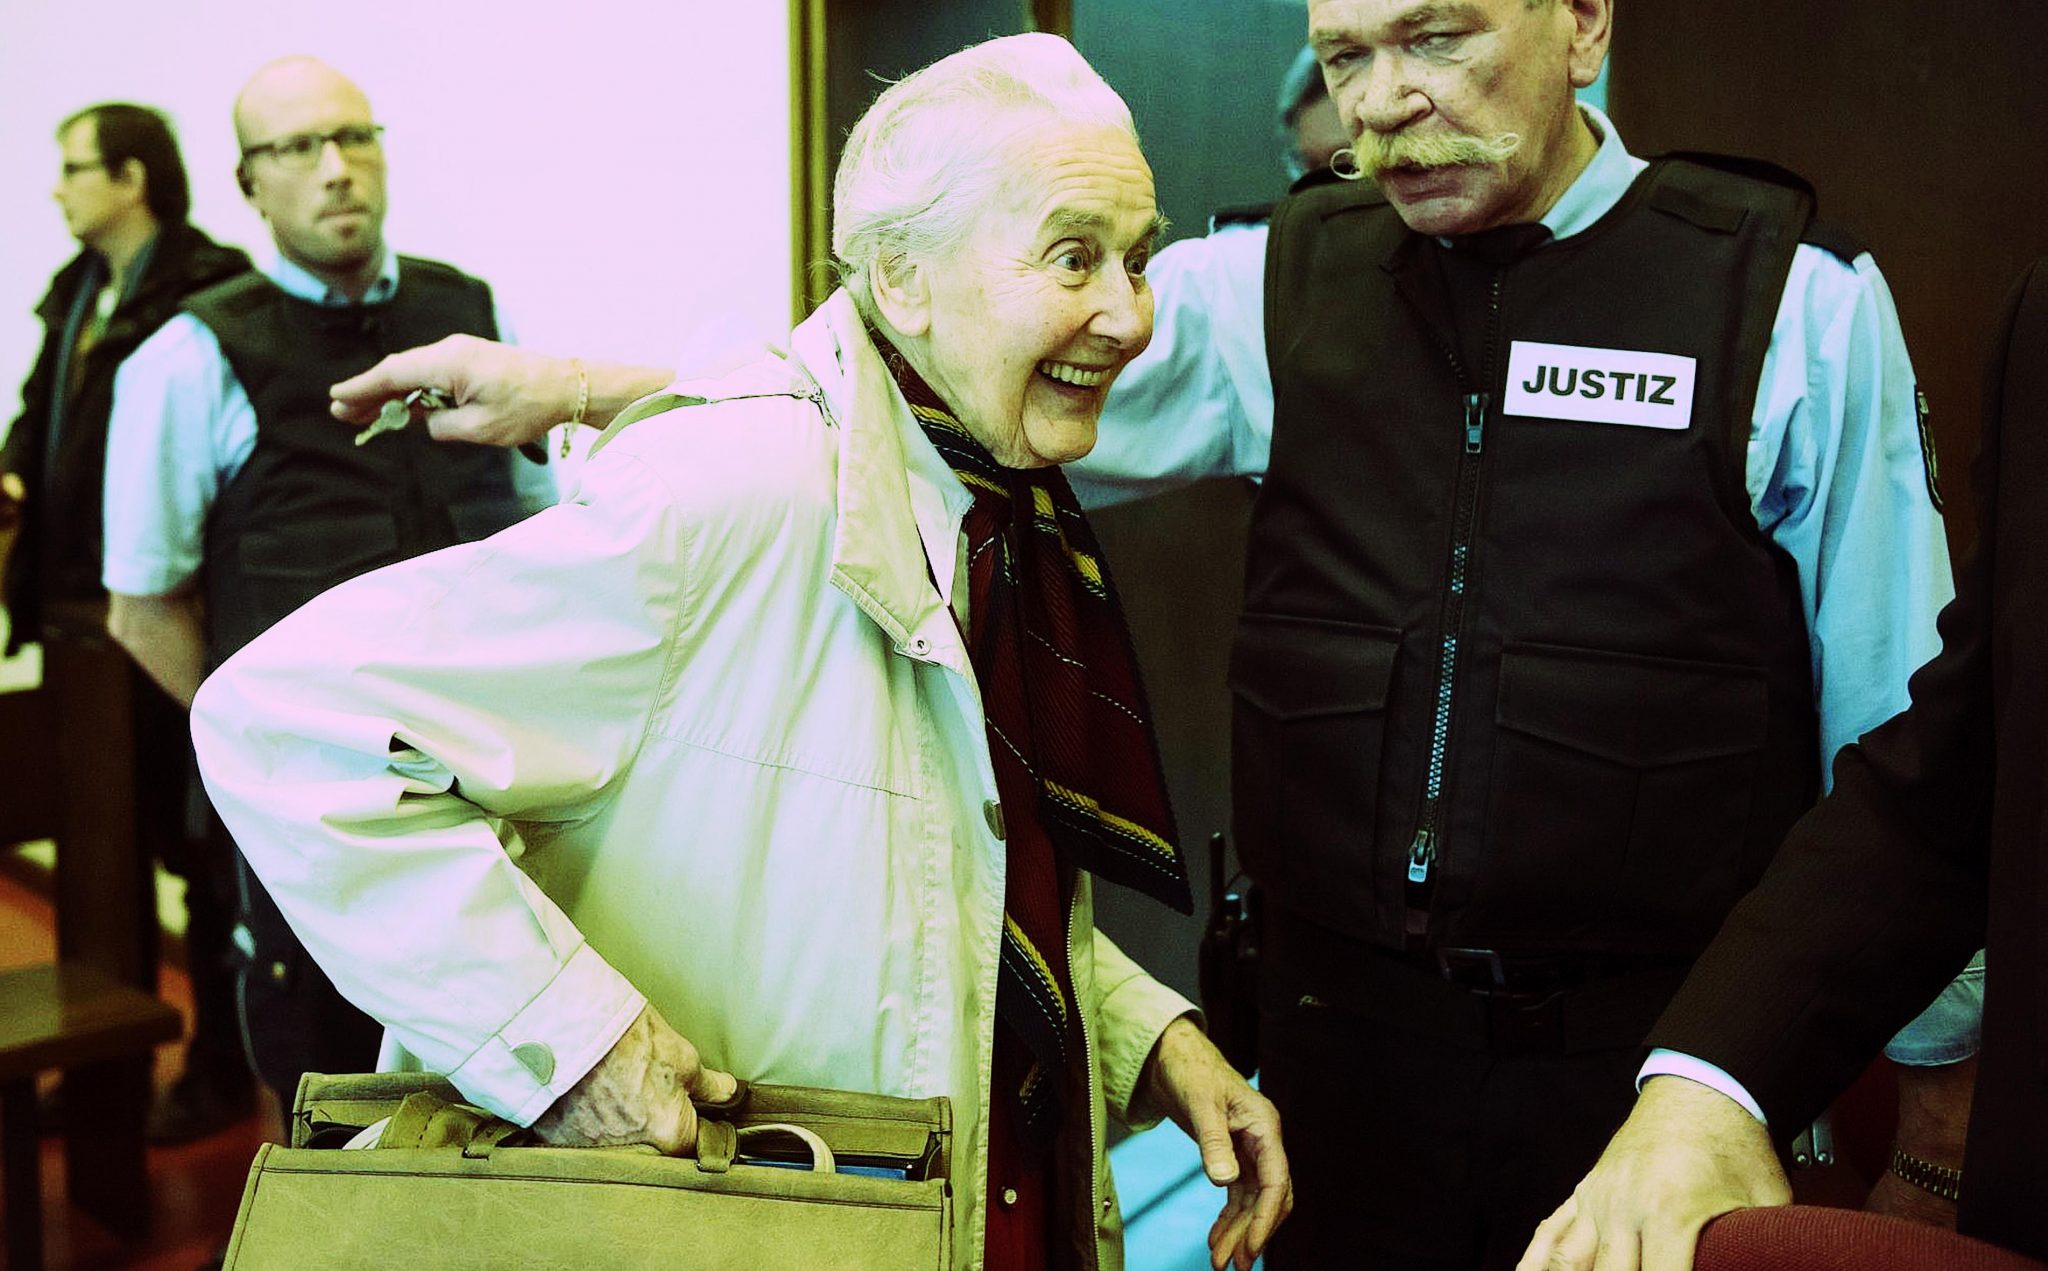 Marche presa: En Alemania detienen a abuela por negar el Holocausto